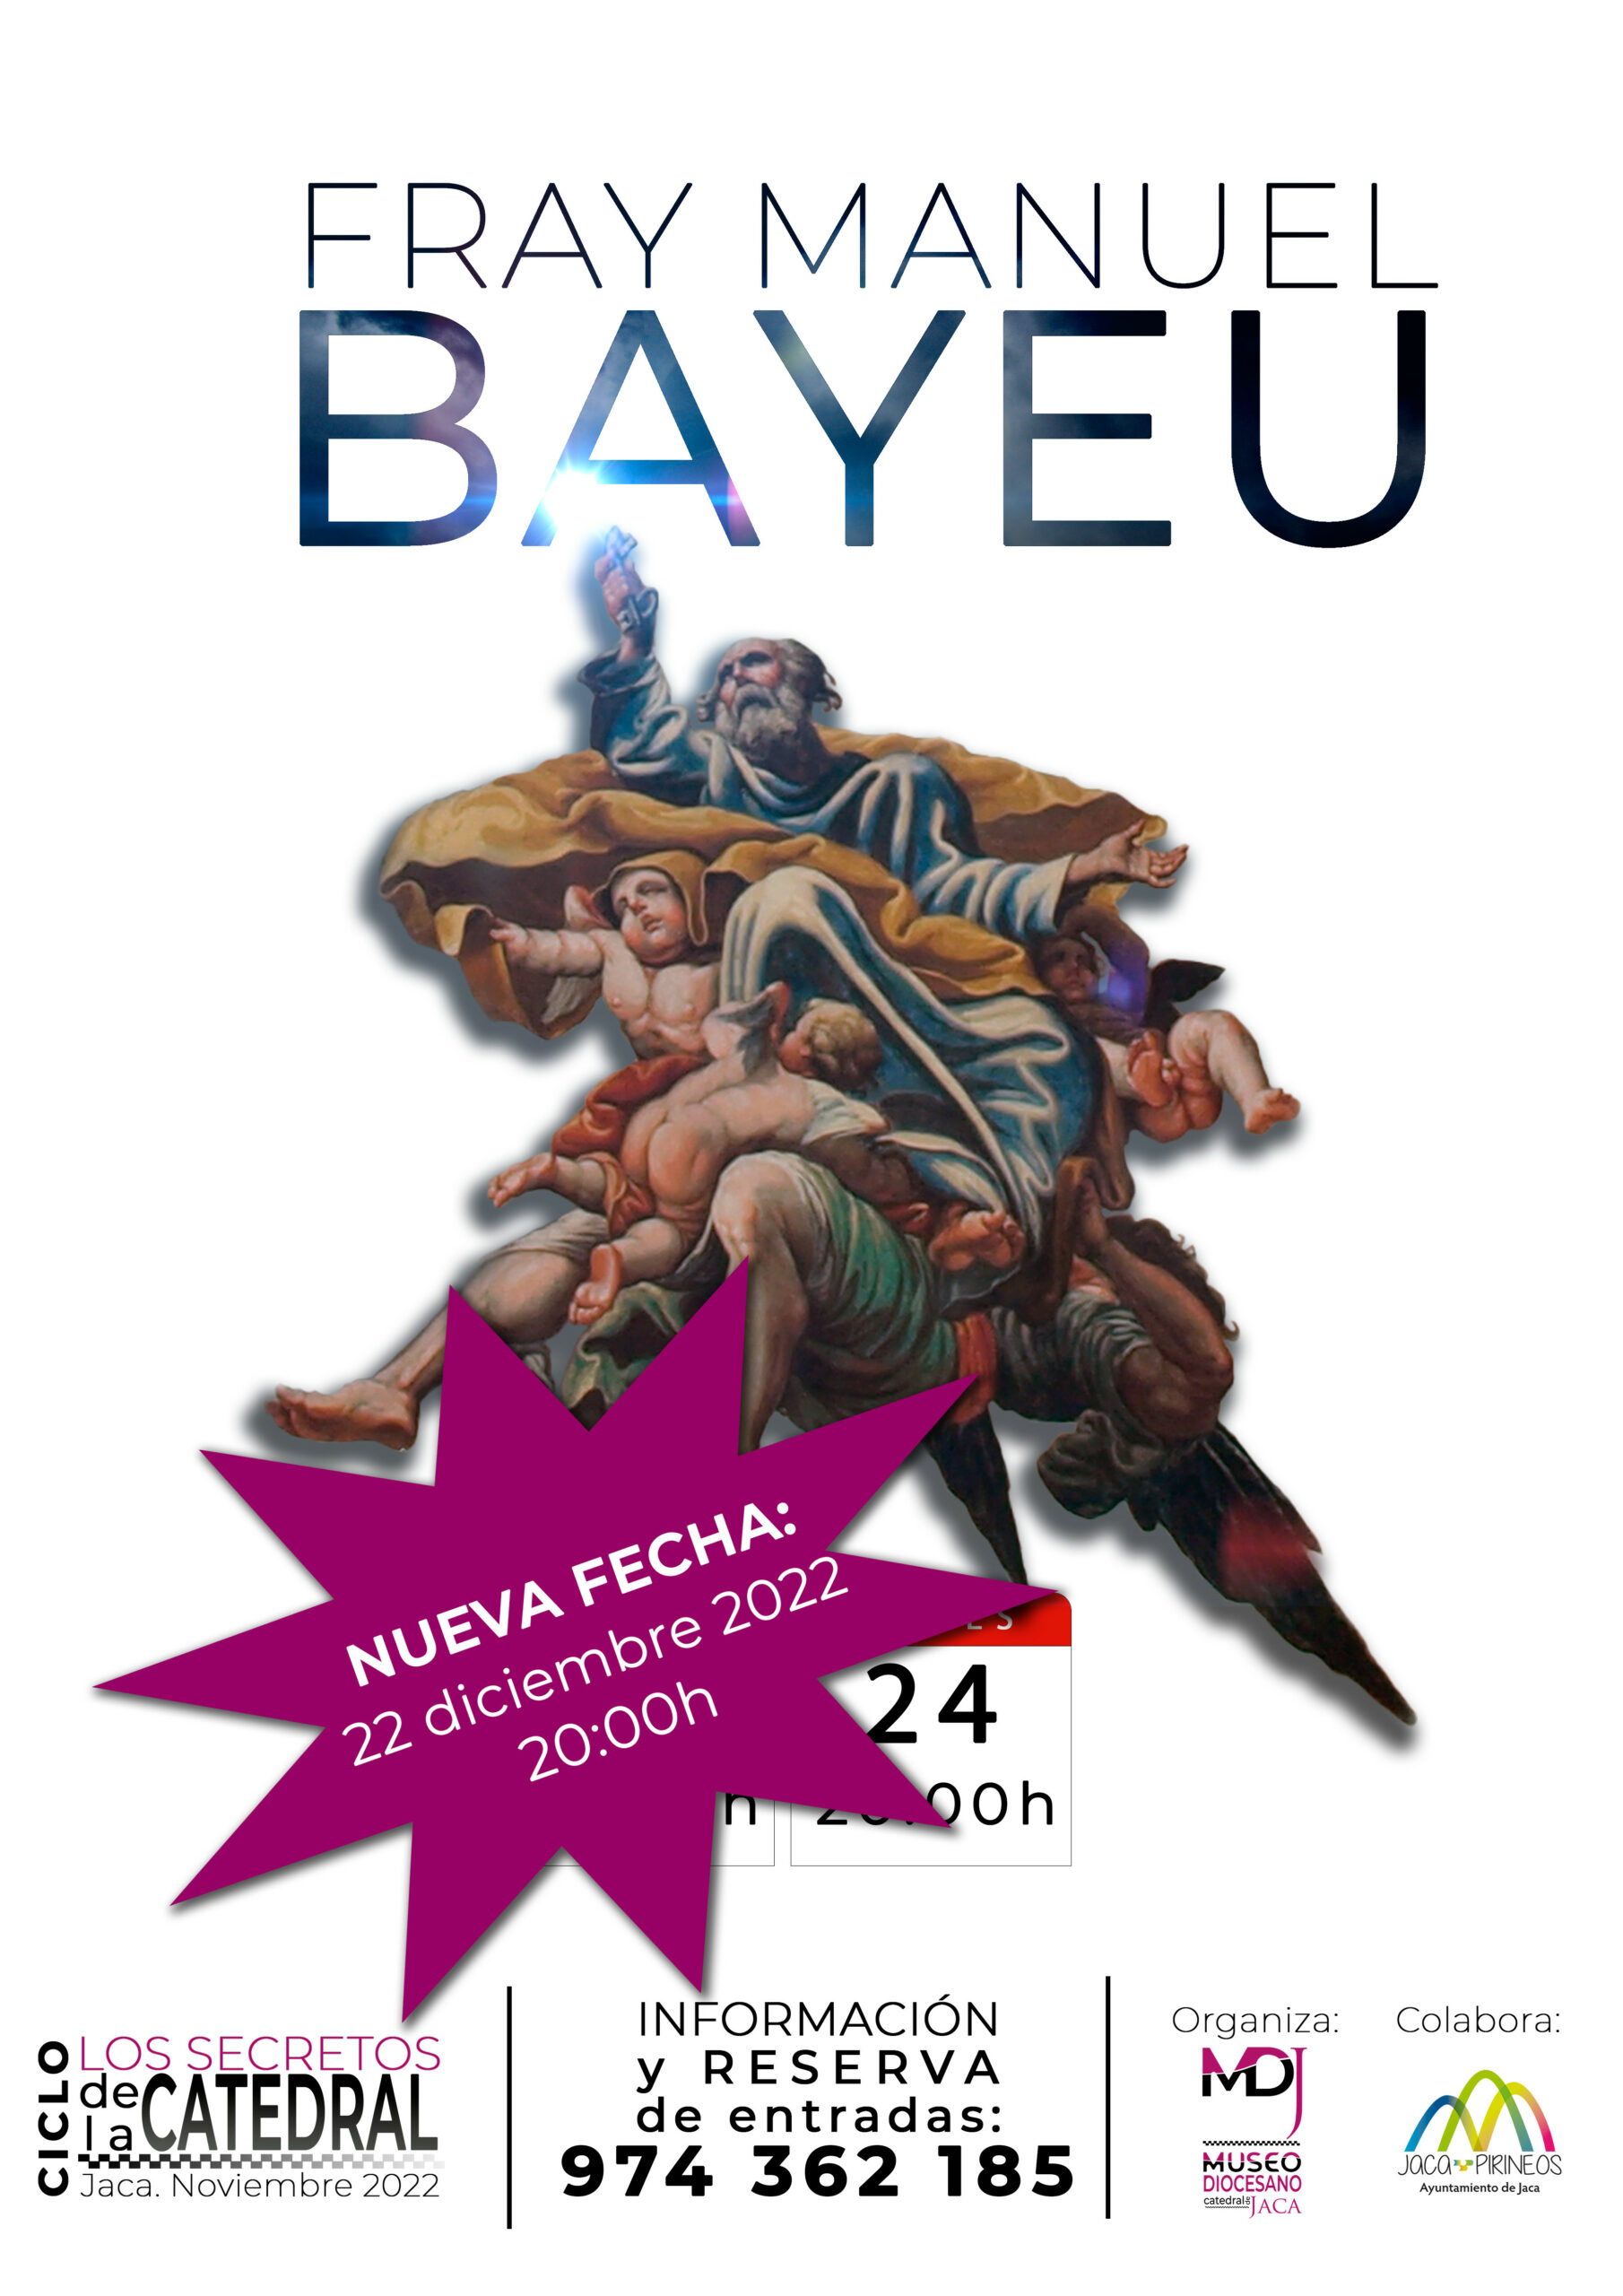 Las pinturas de Bayeu